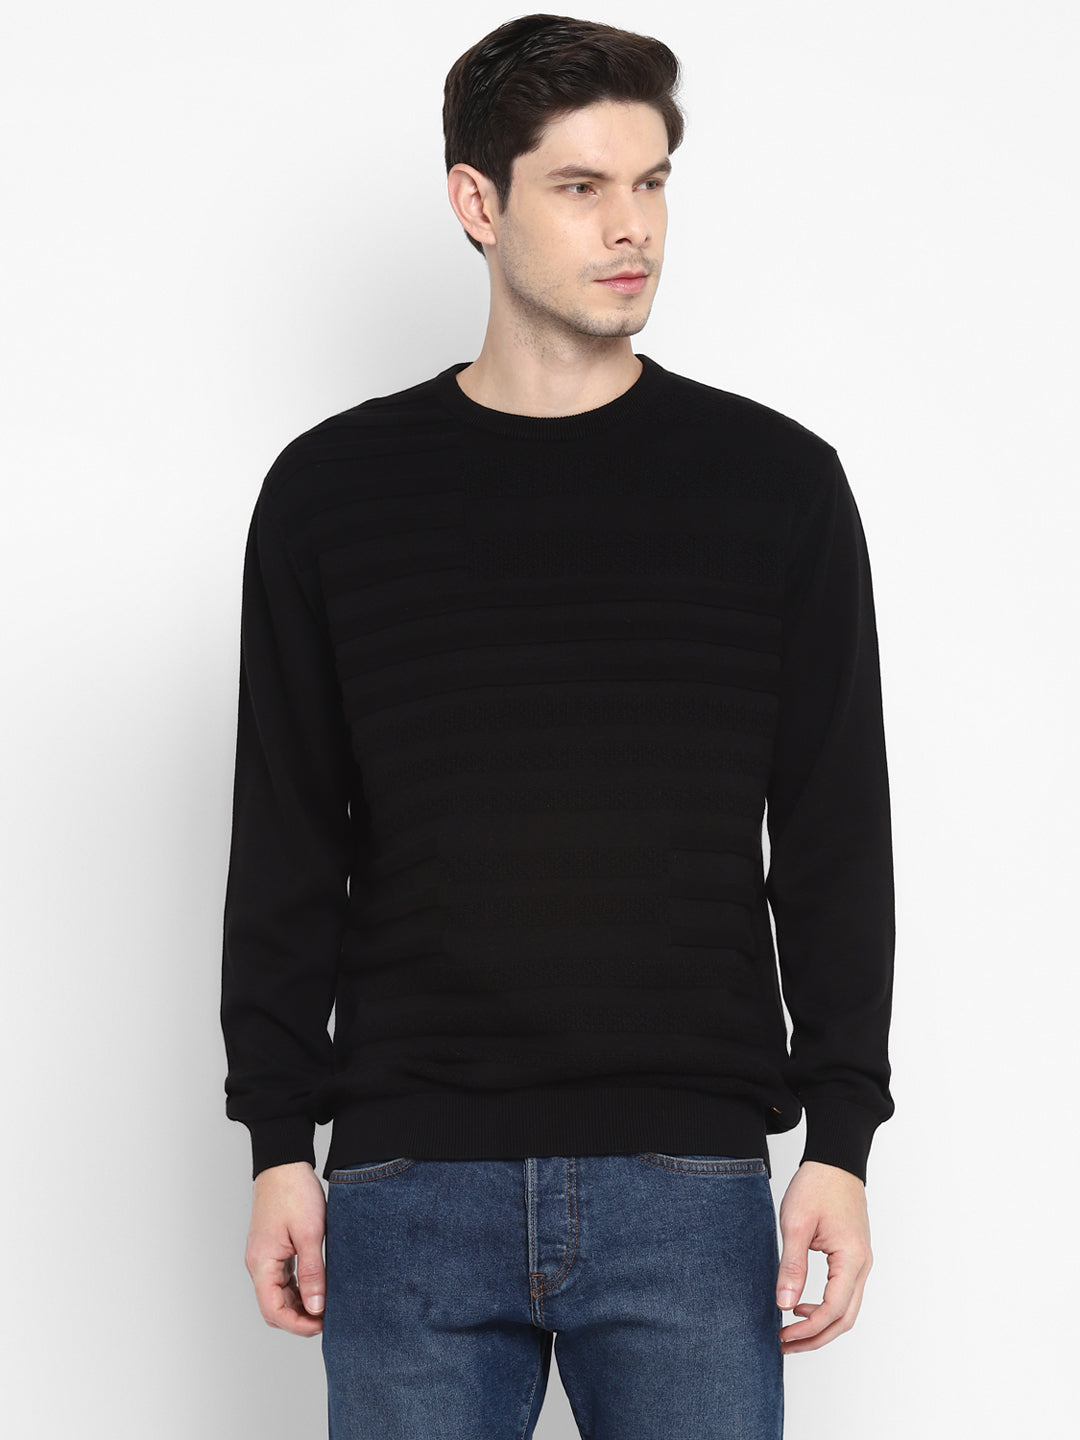 Black Full Sleeve Sweater for Men